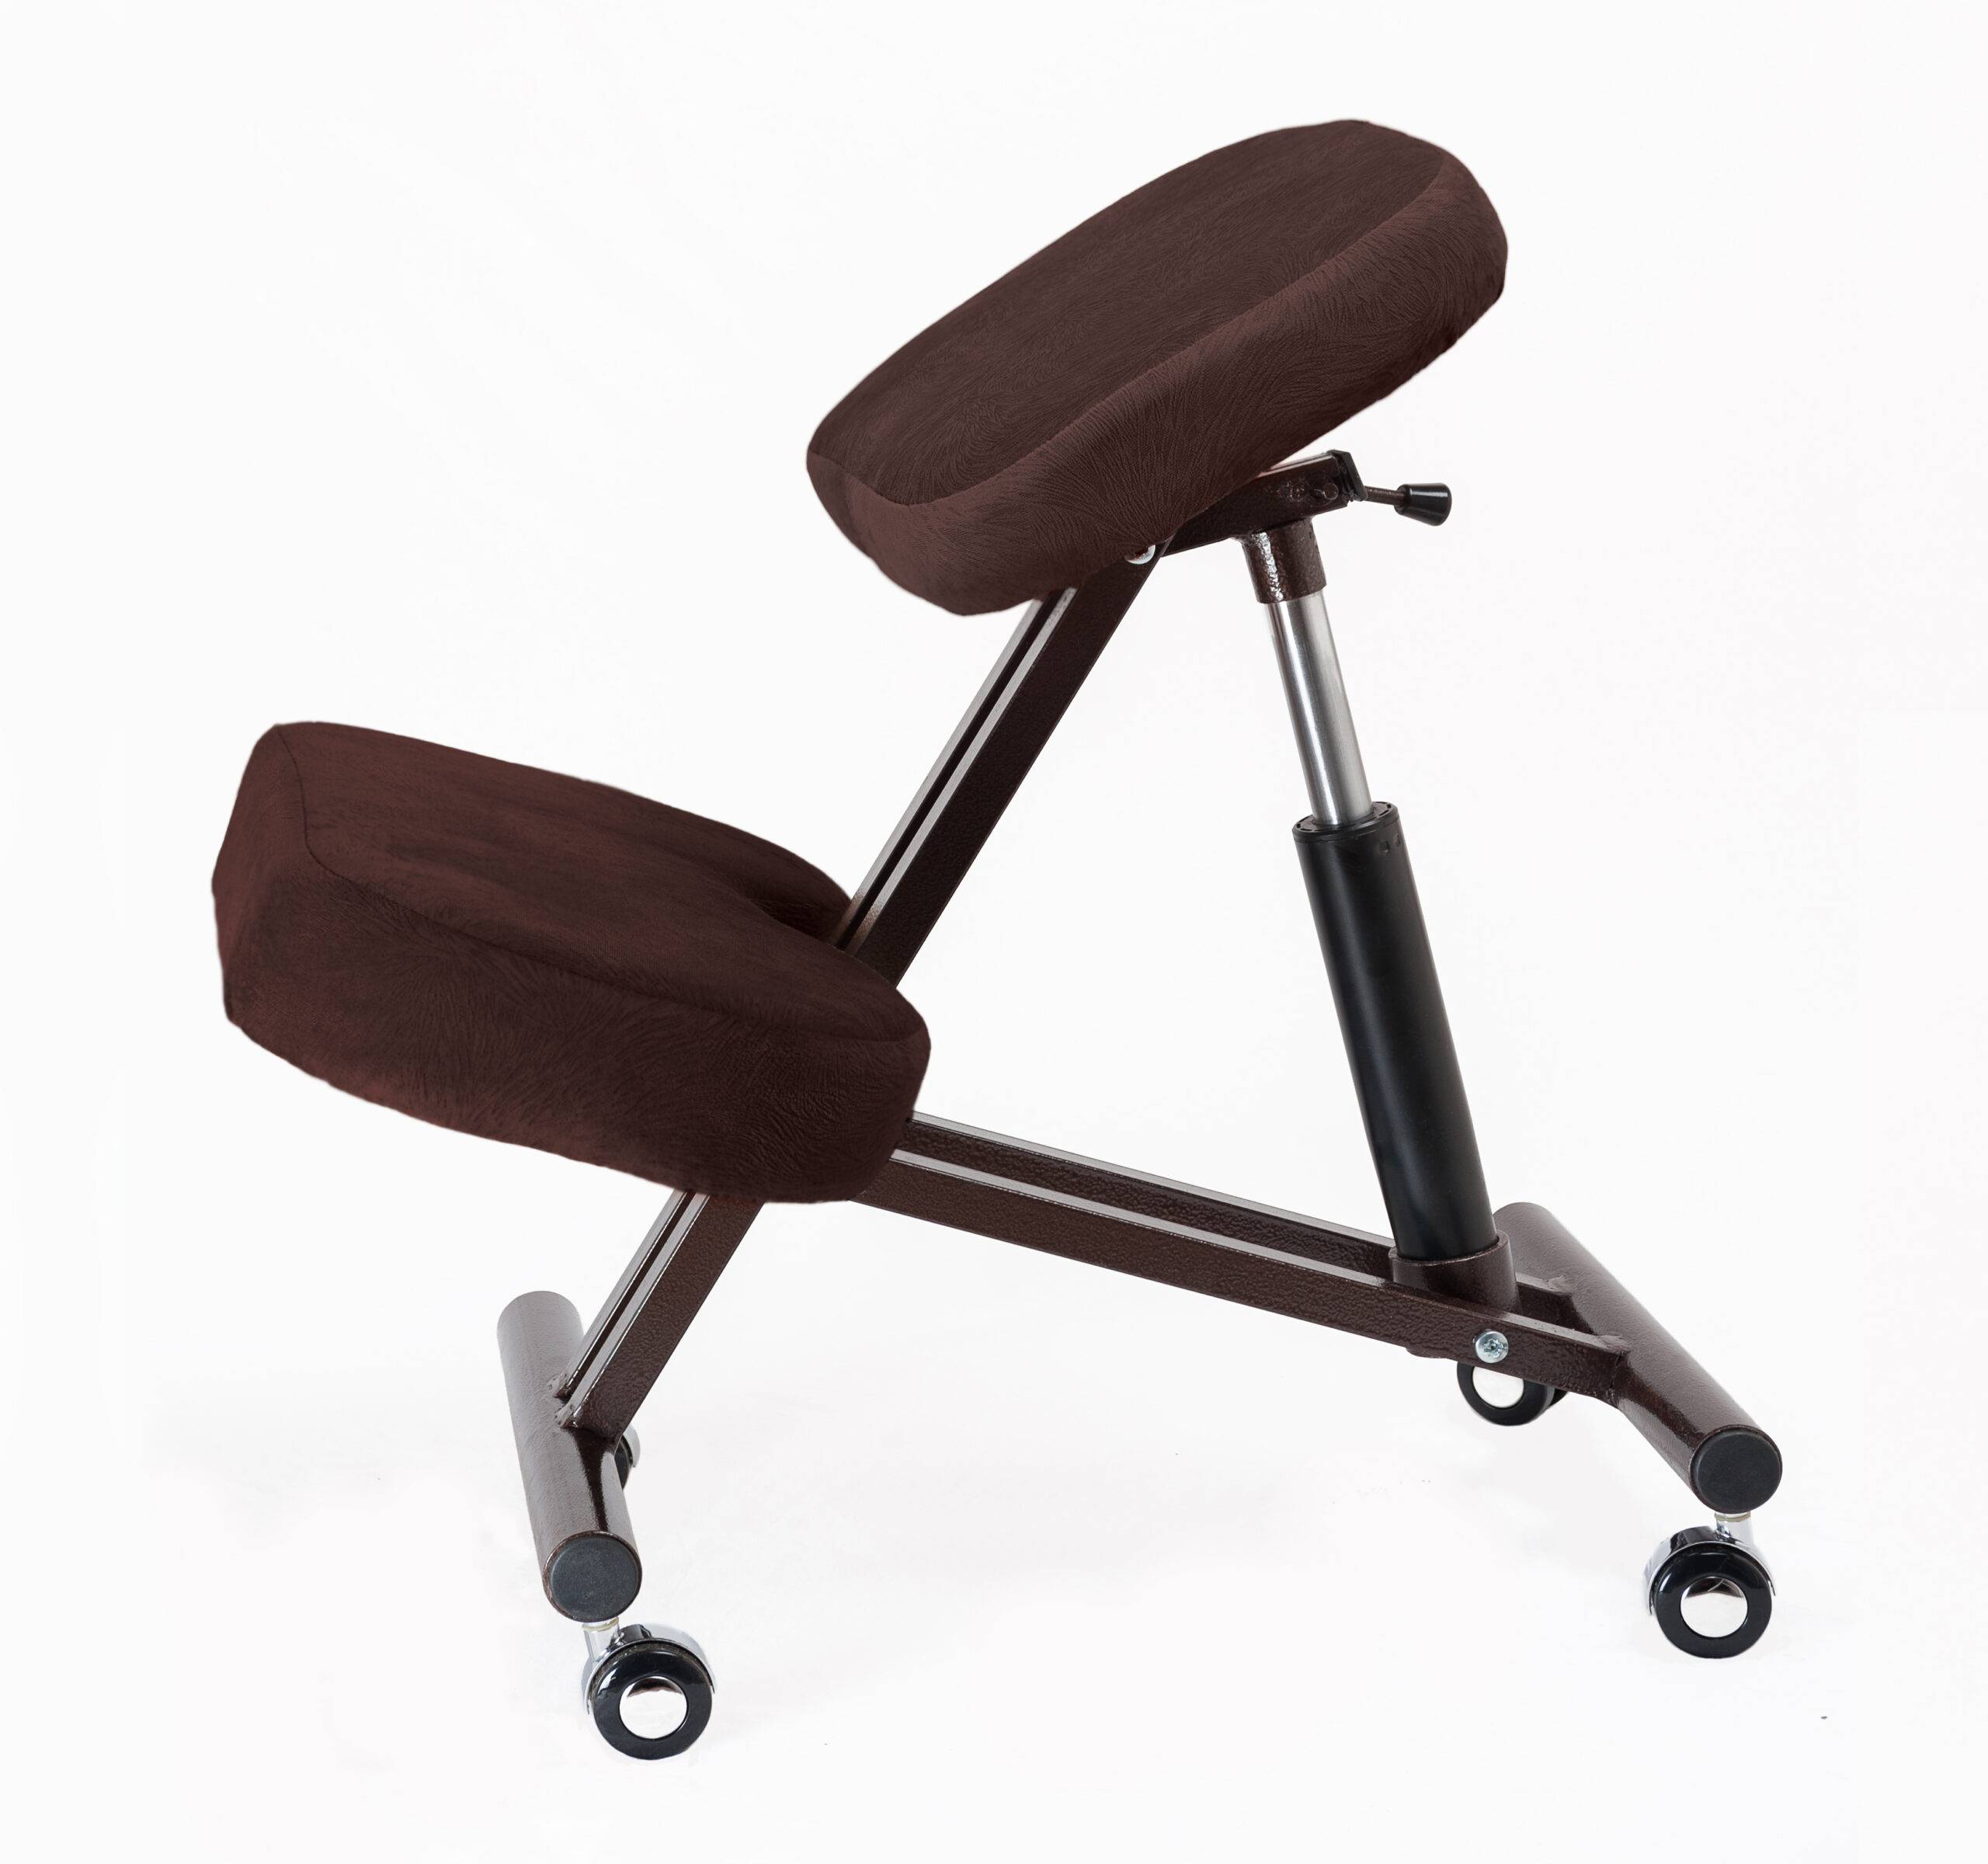 Коленный стул своими руками: чертеж с размерами находим в интернете, готовим материалы, чтобы сделать функциональную ортопедическую мебель для здоровья